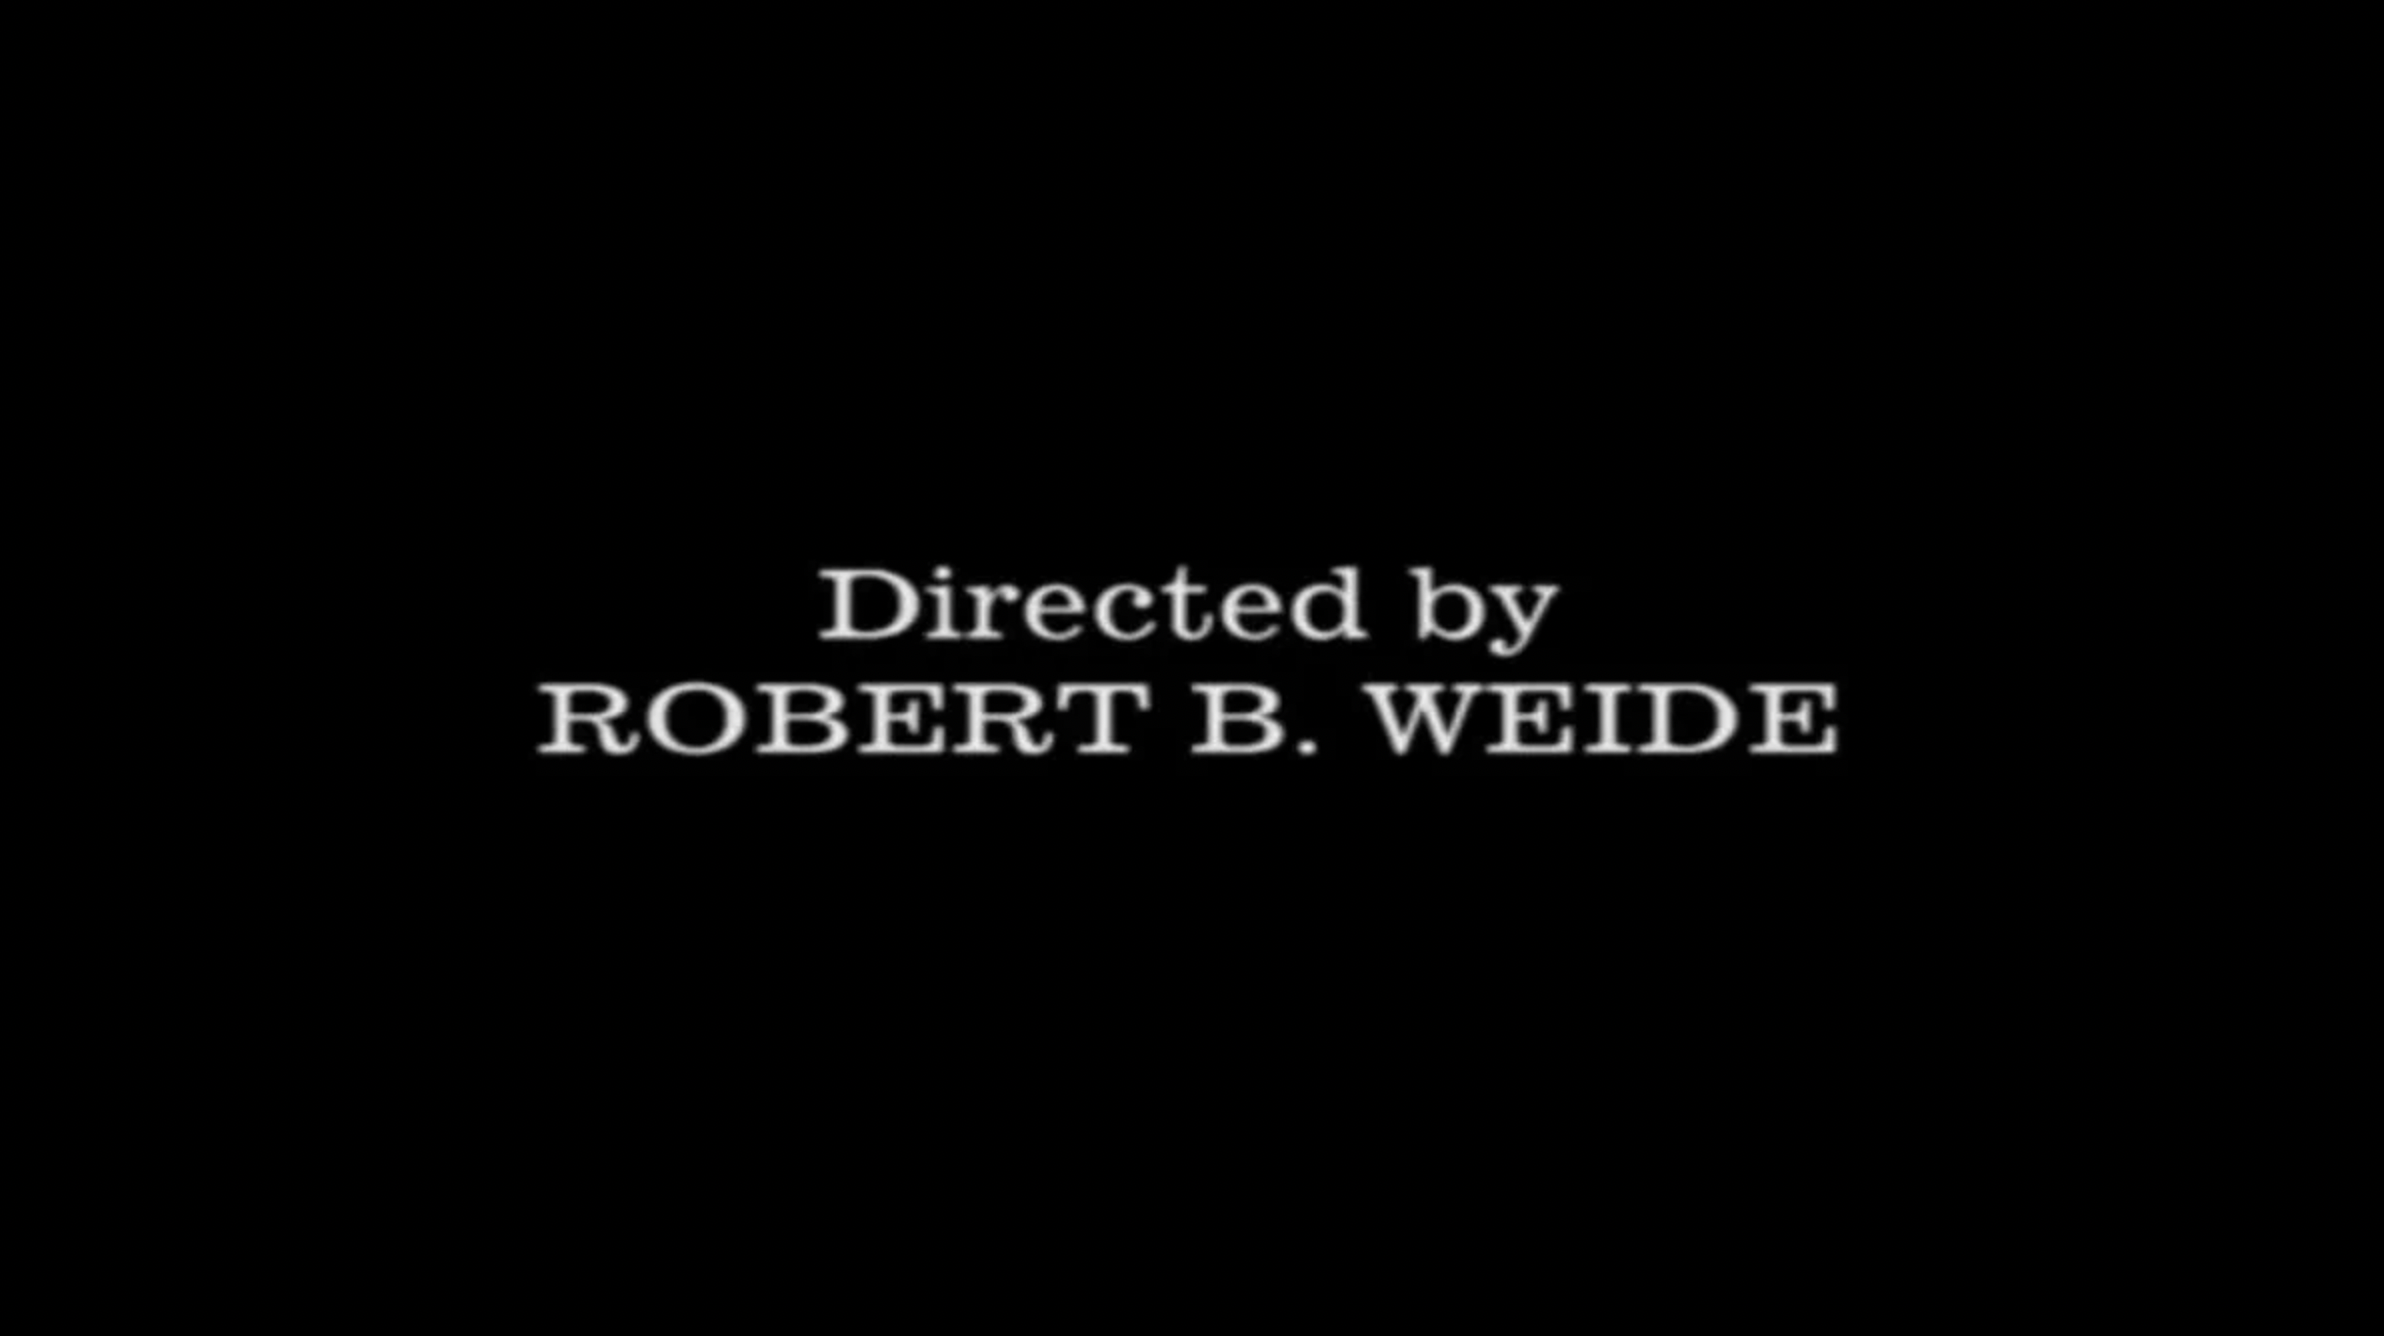 director by robert b weide